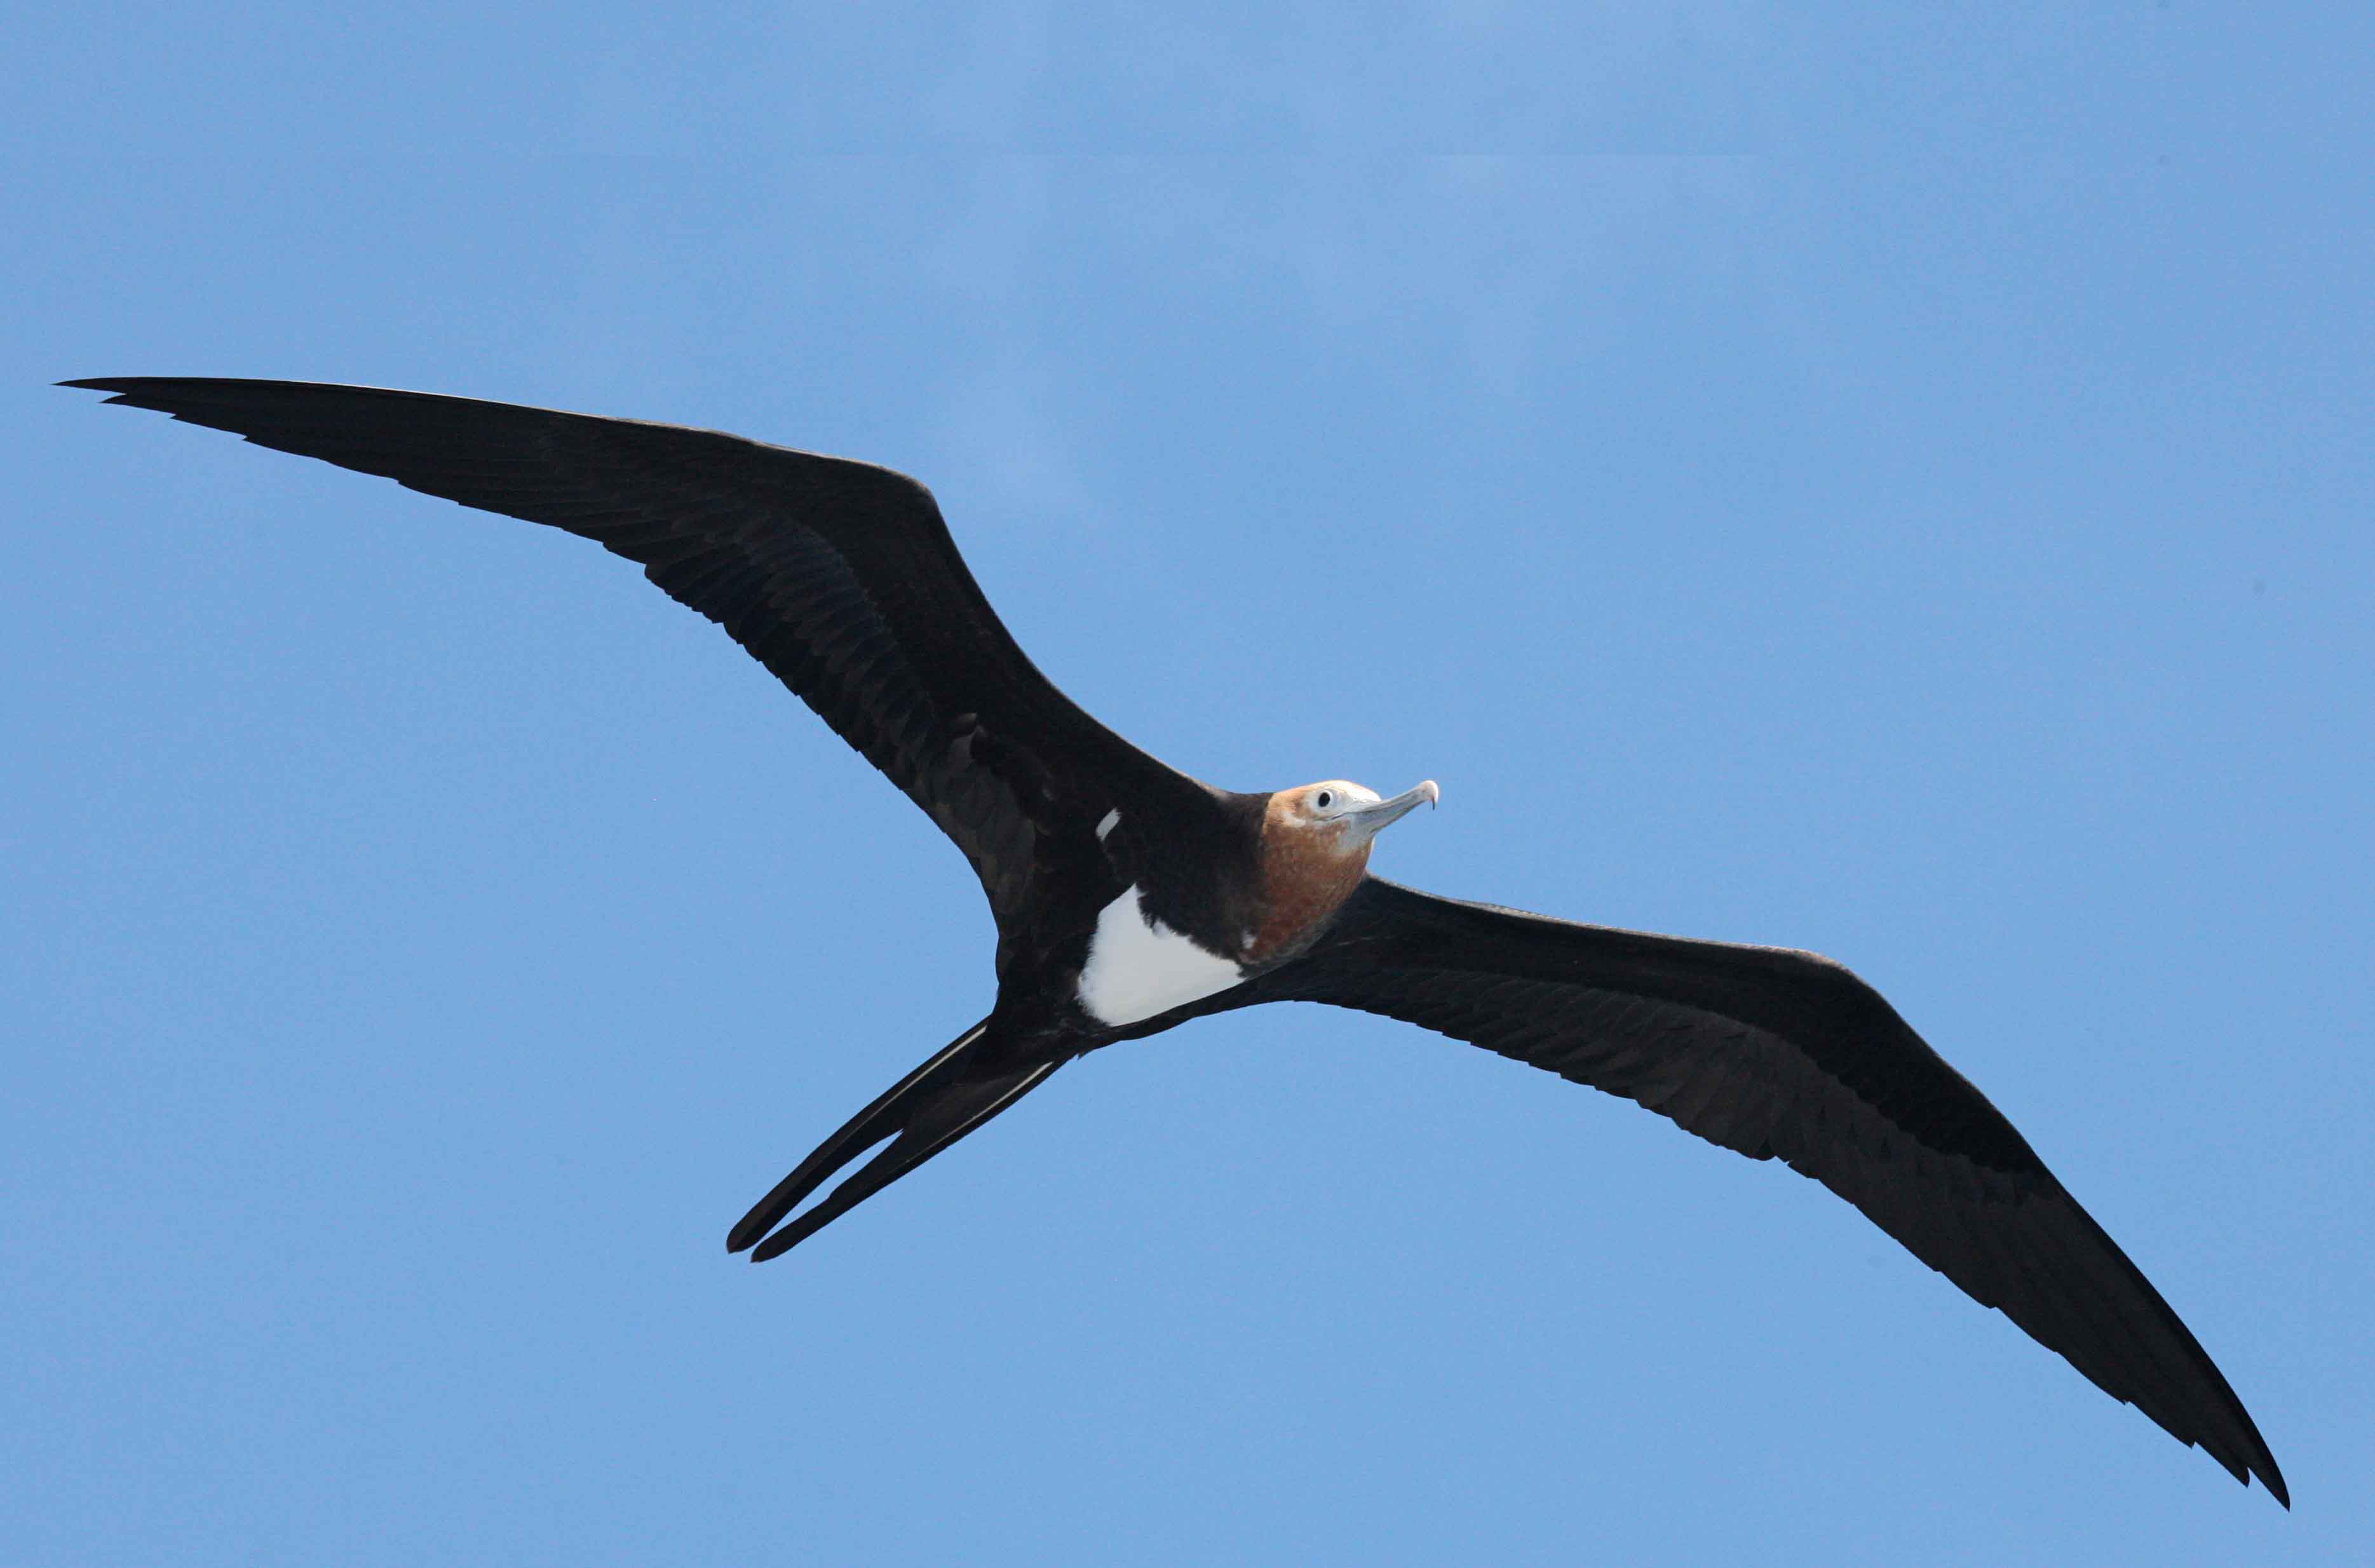 Tras alcanzar mayor altitud, las aves pueden descender planeando, volando con vientos laterales para alcanzar velocidades máximas